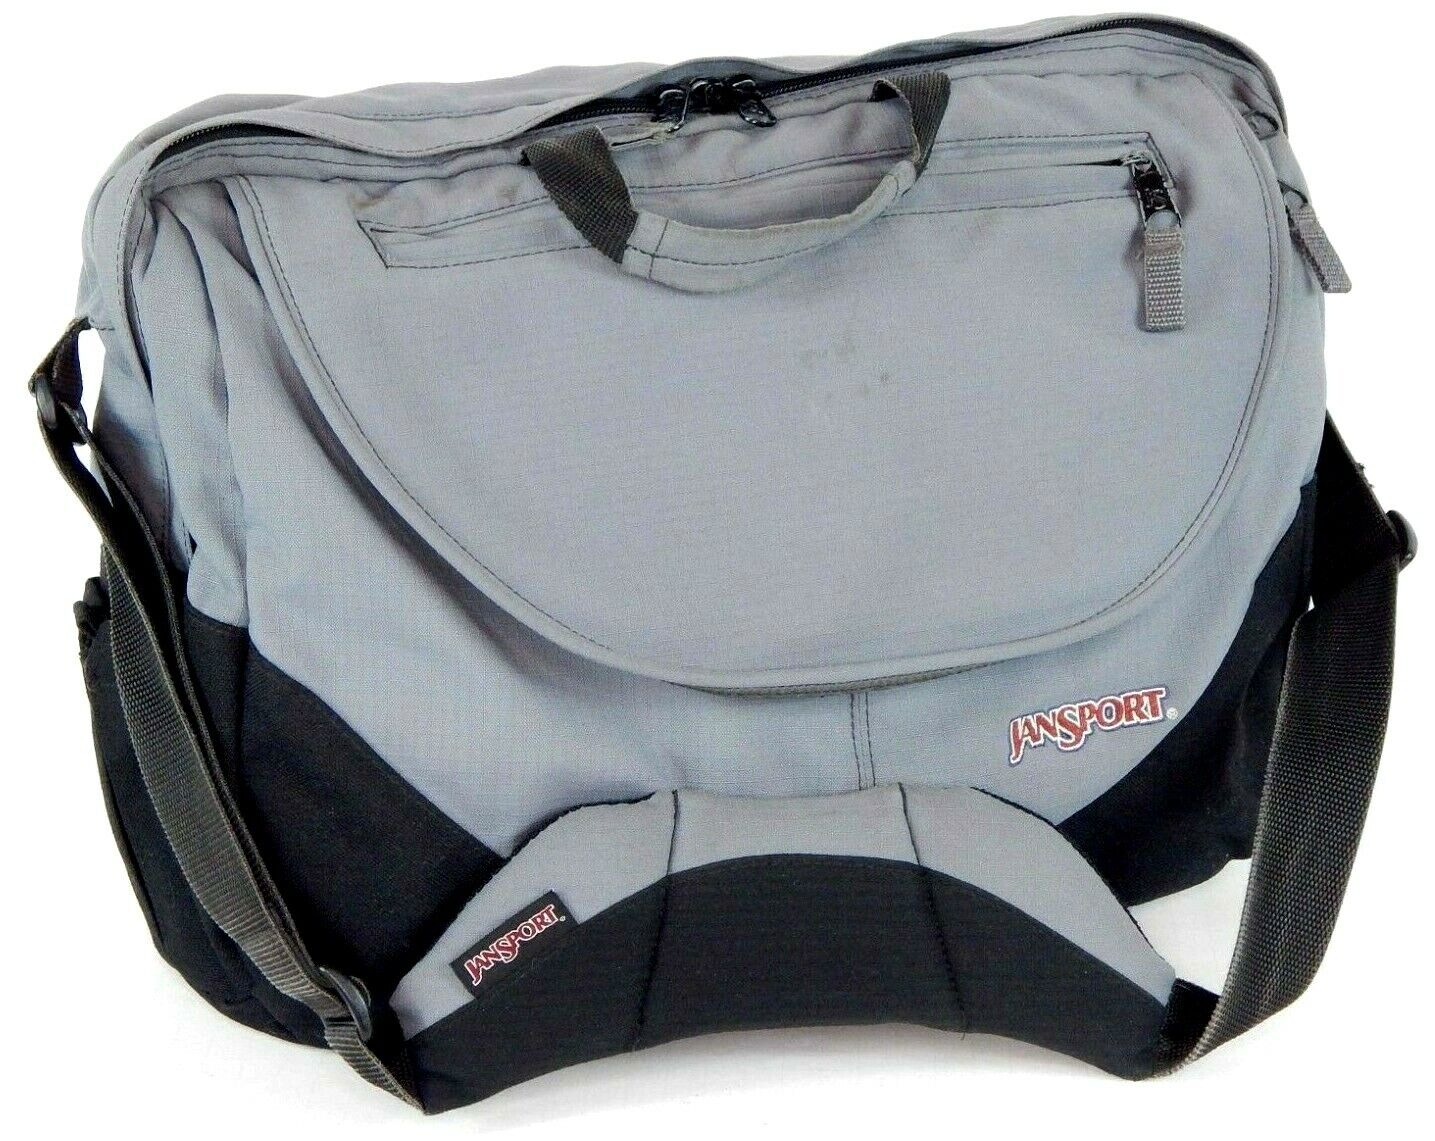 Jansport Laptop Messenger Bag Padded Shoulder Crossbody Bag Black & Gray